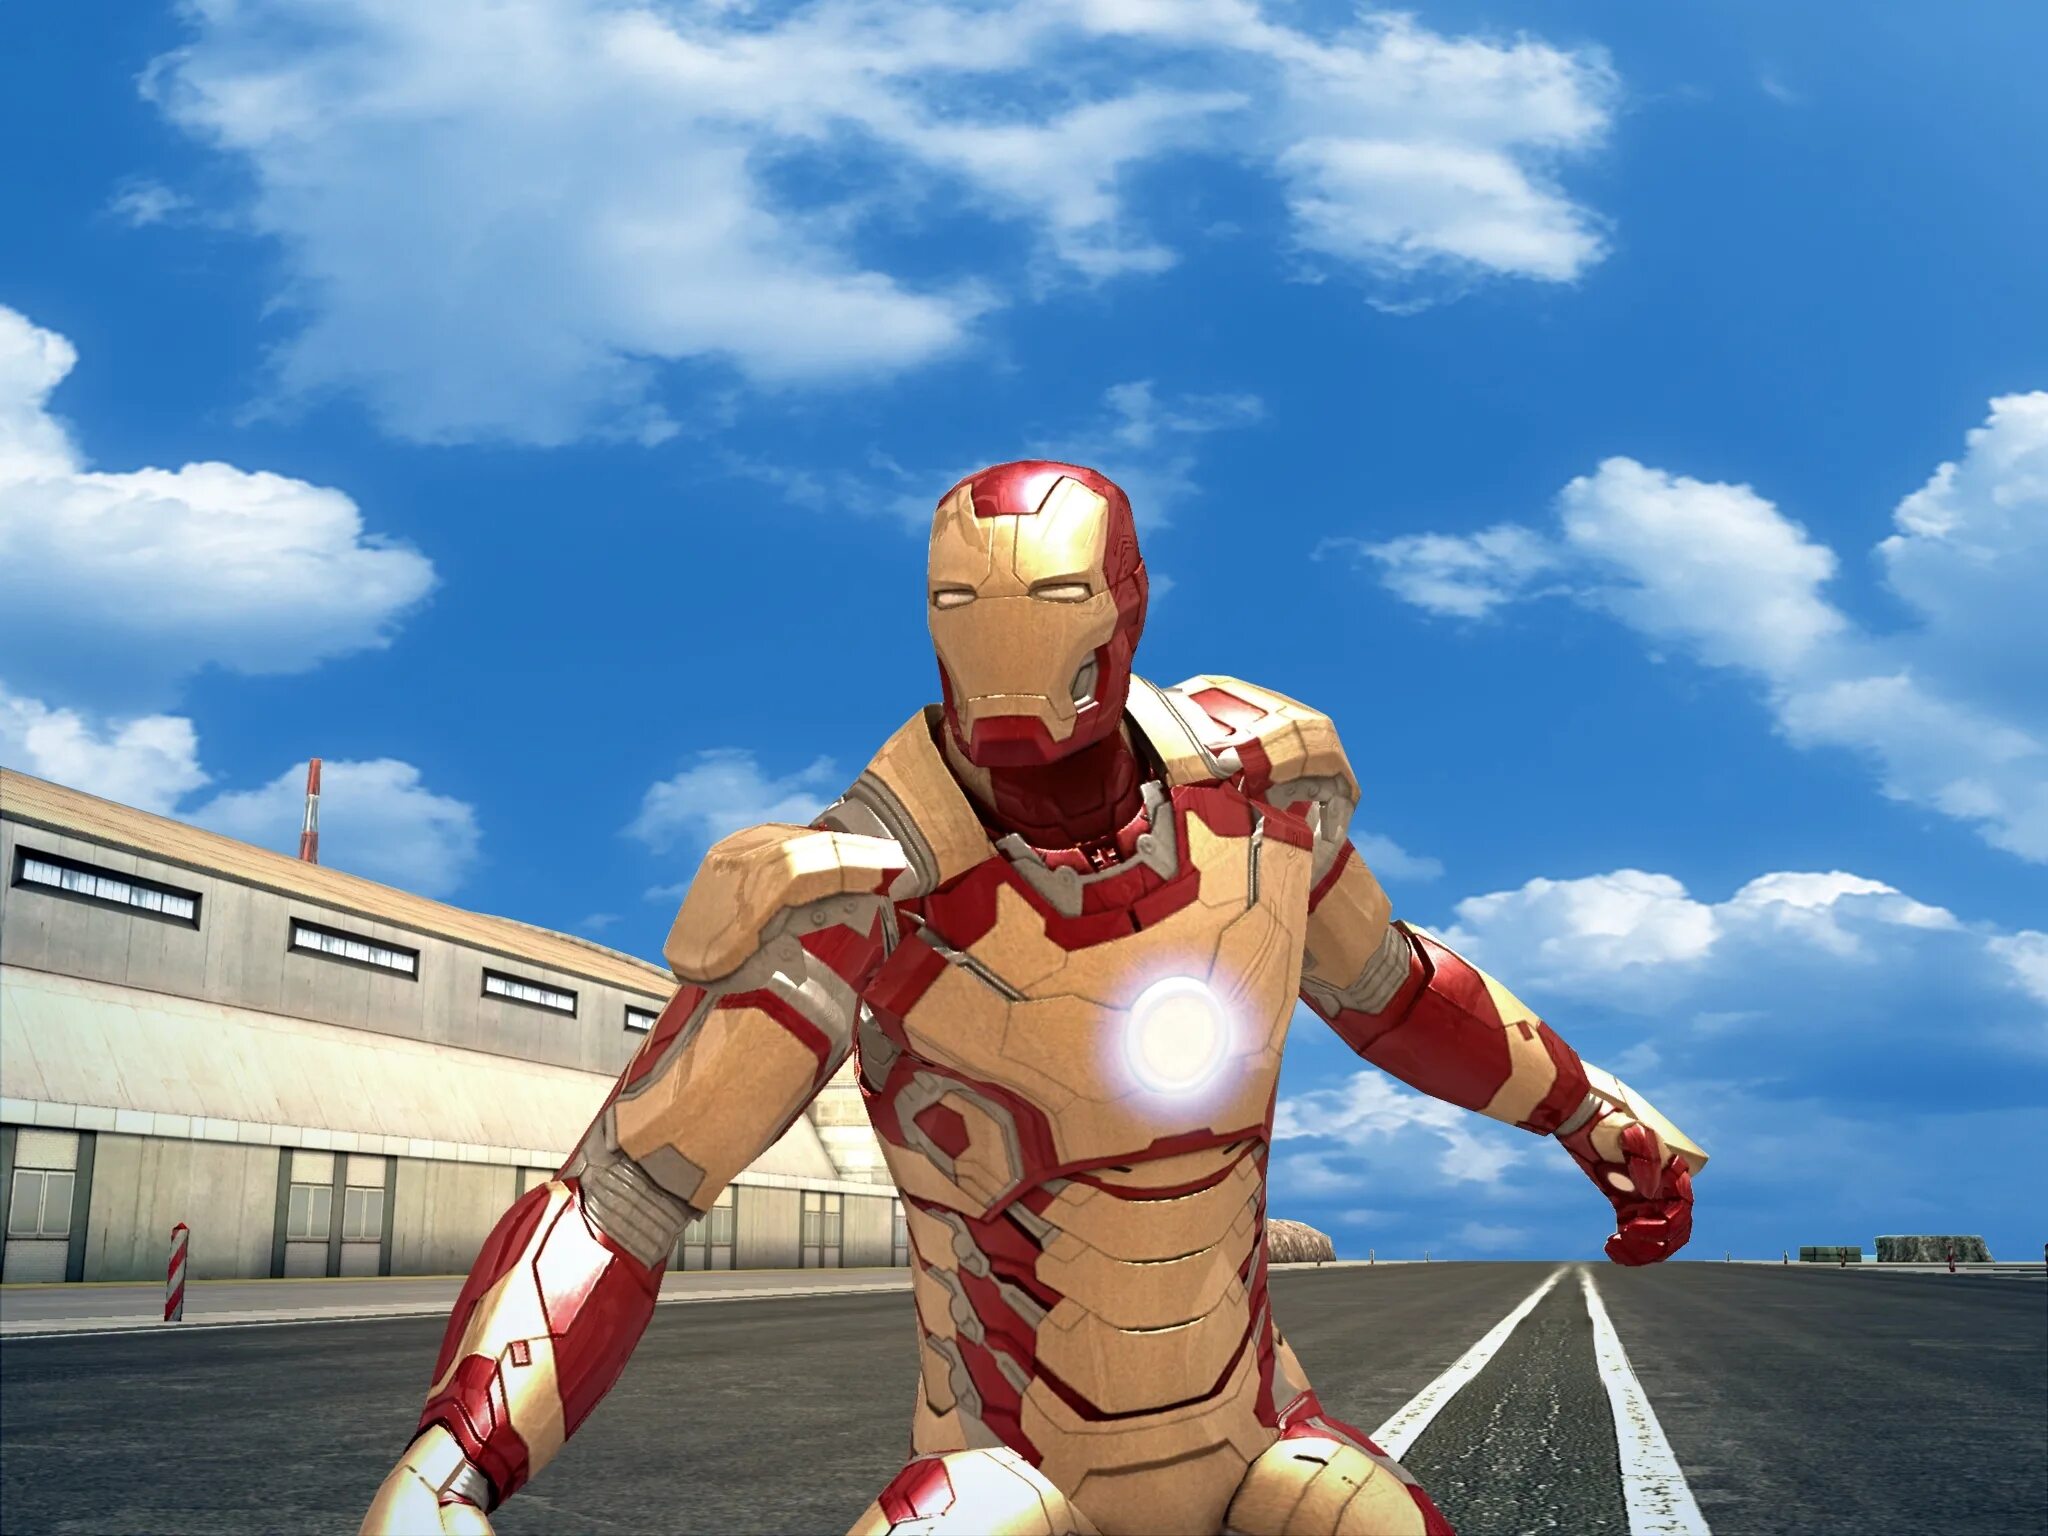 Iron man (игра, 2008). Iron man 3 игра. Iron man 3 Gameloft костюмы. Железный человек игра 2008. The man игра на андроид